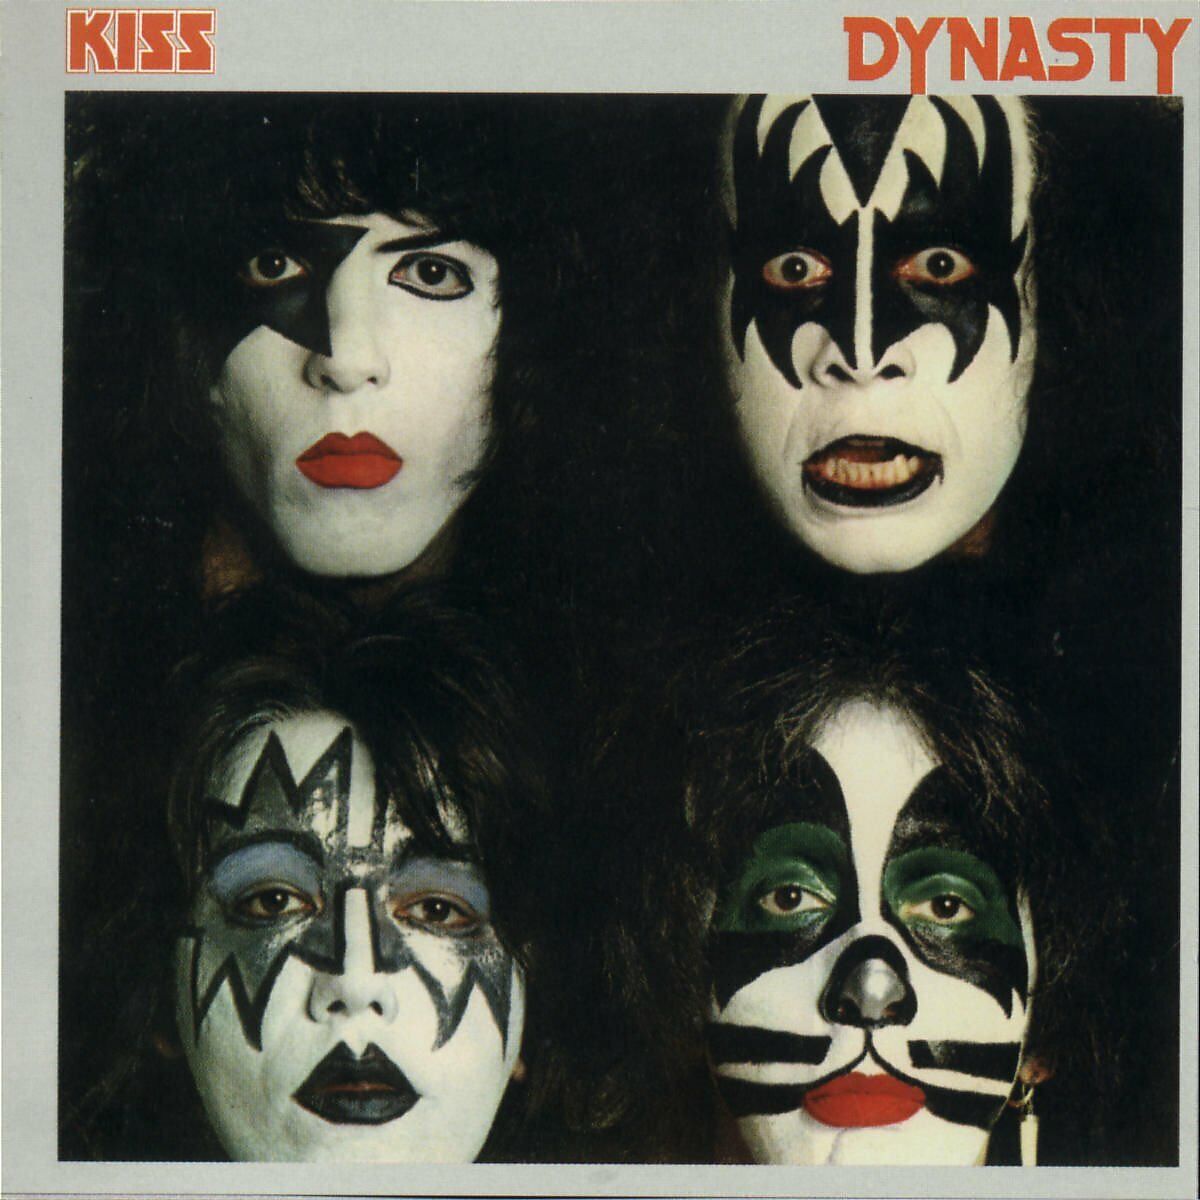 KISS - Dynasty [CD]